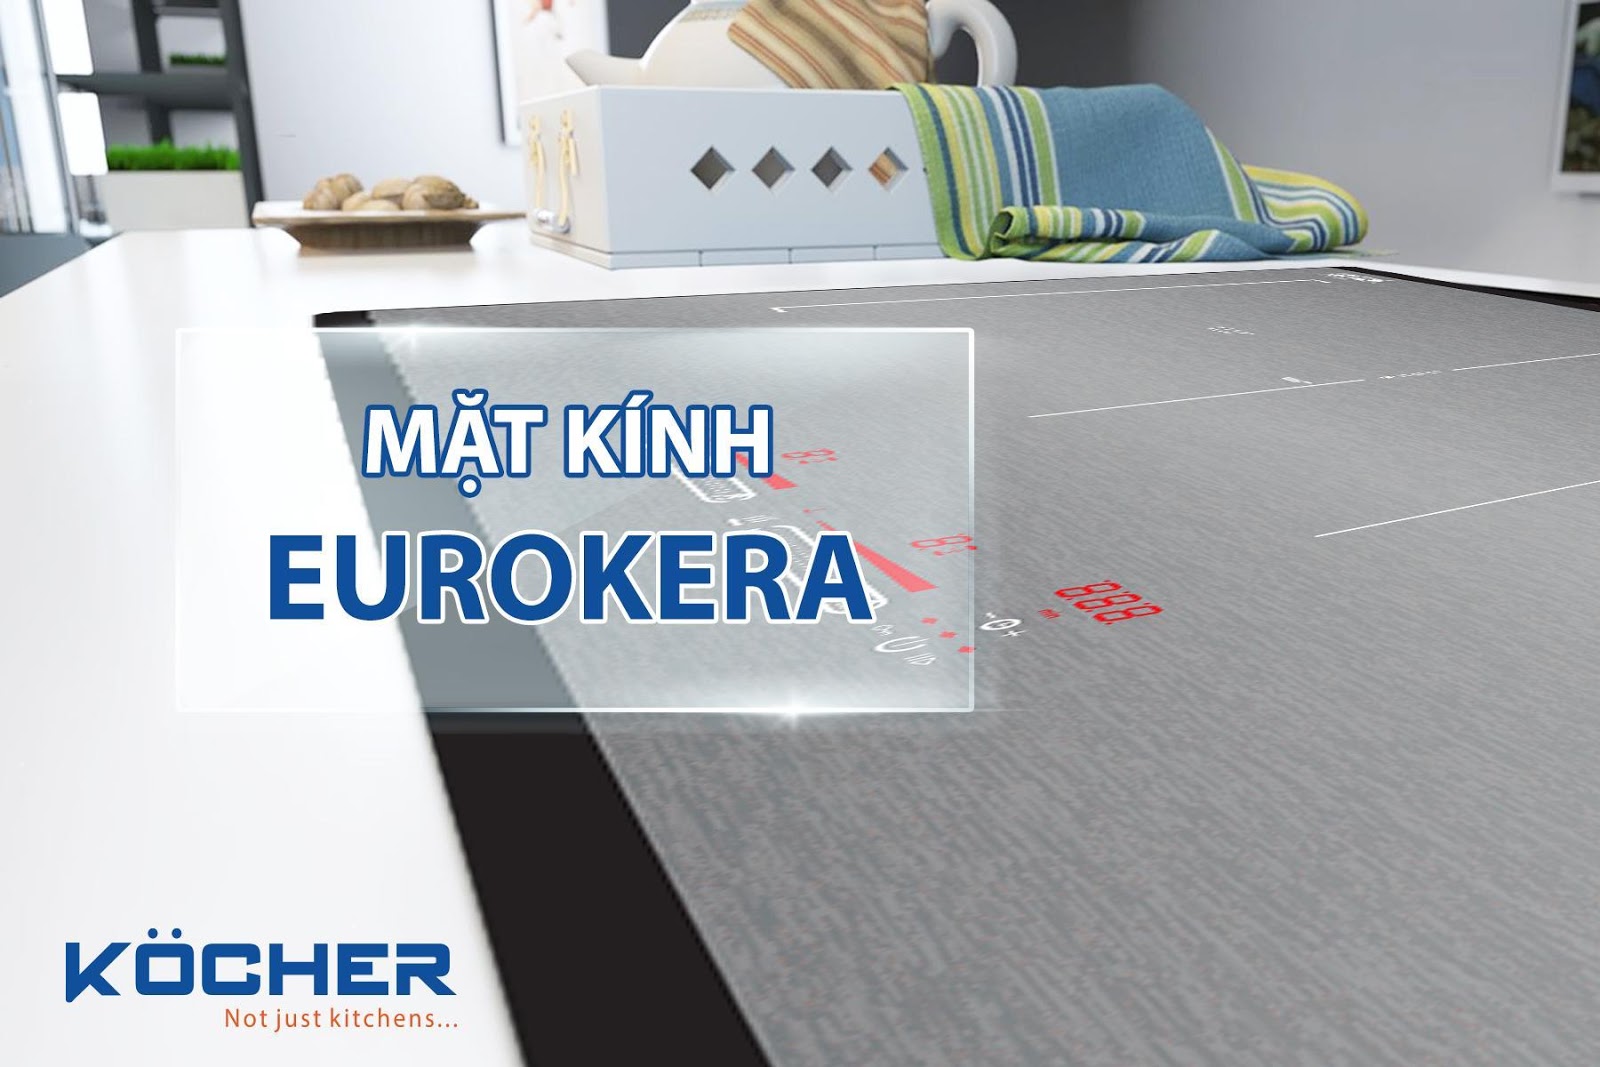 Vì sao Kocher lại lựa chọn mặt kính Eurokera cho mẫu thiết kế bếp từ Kocher DIB4-888 mới lần này?